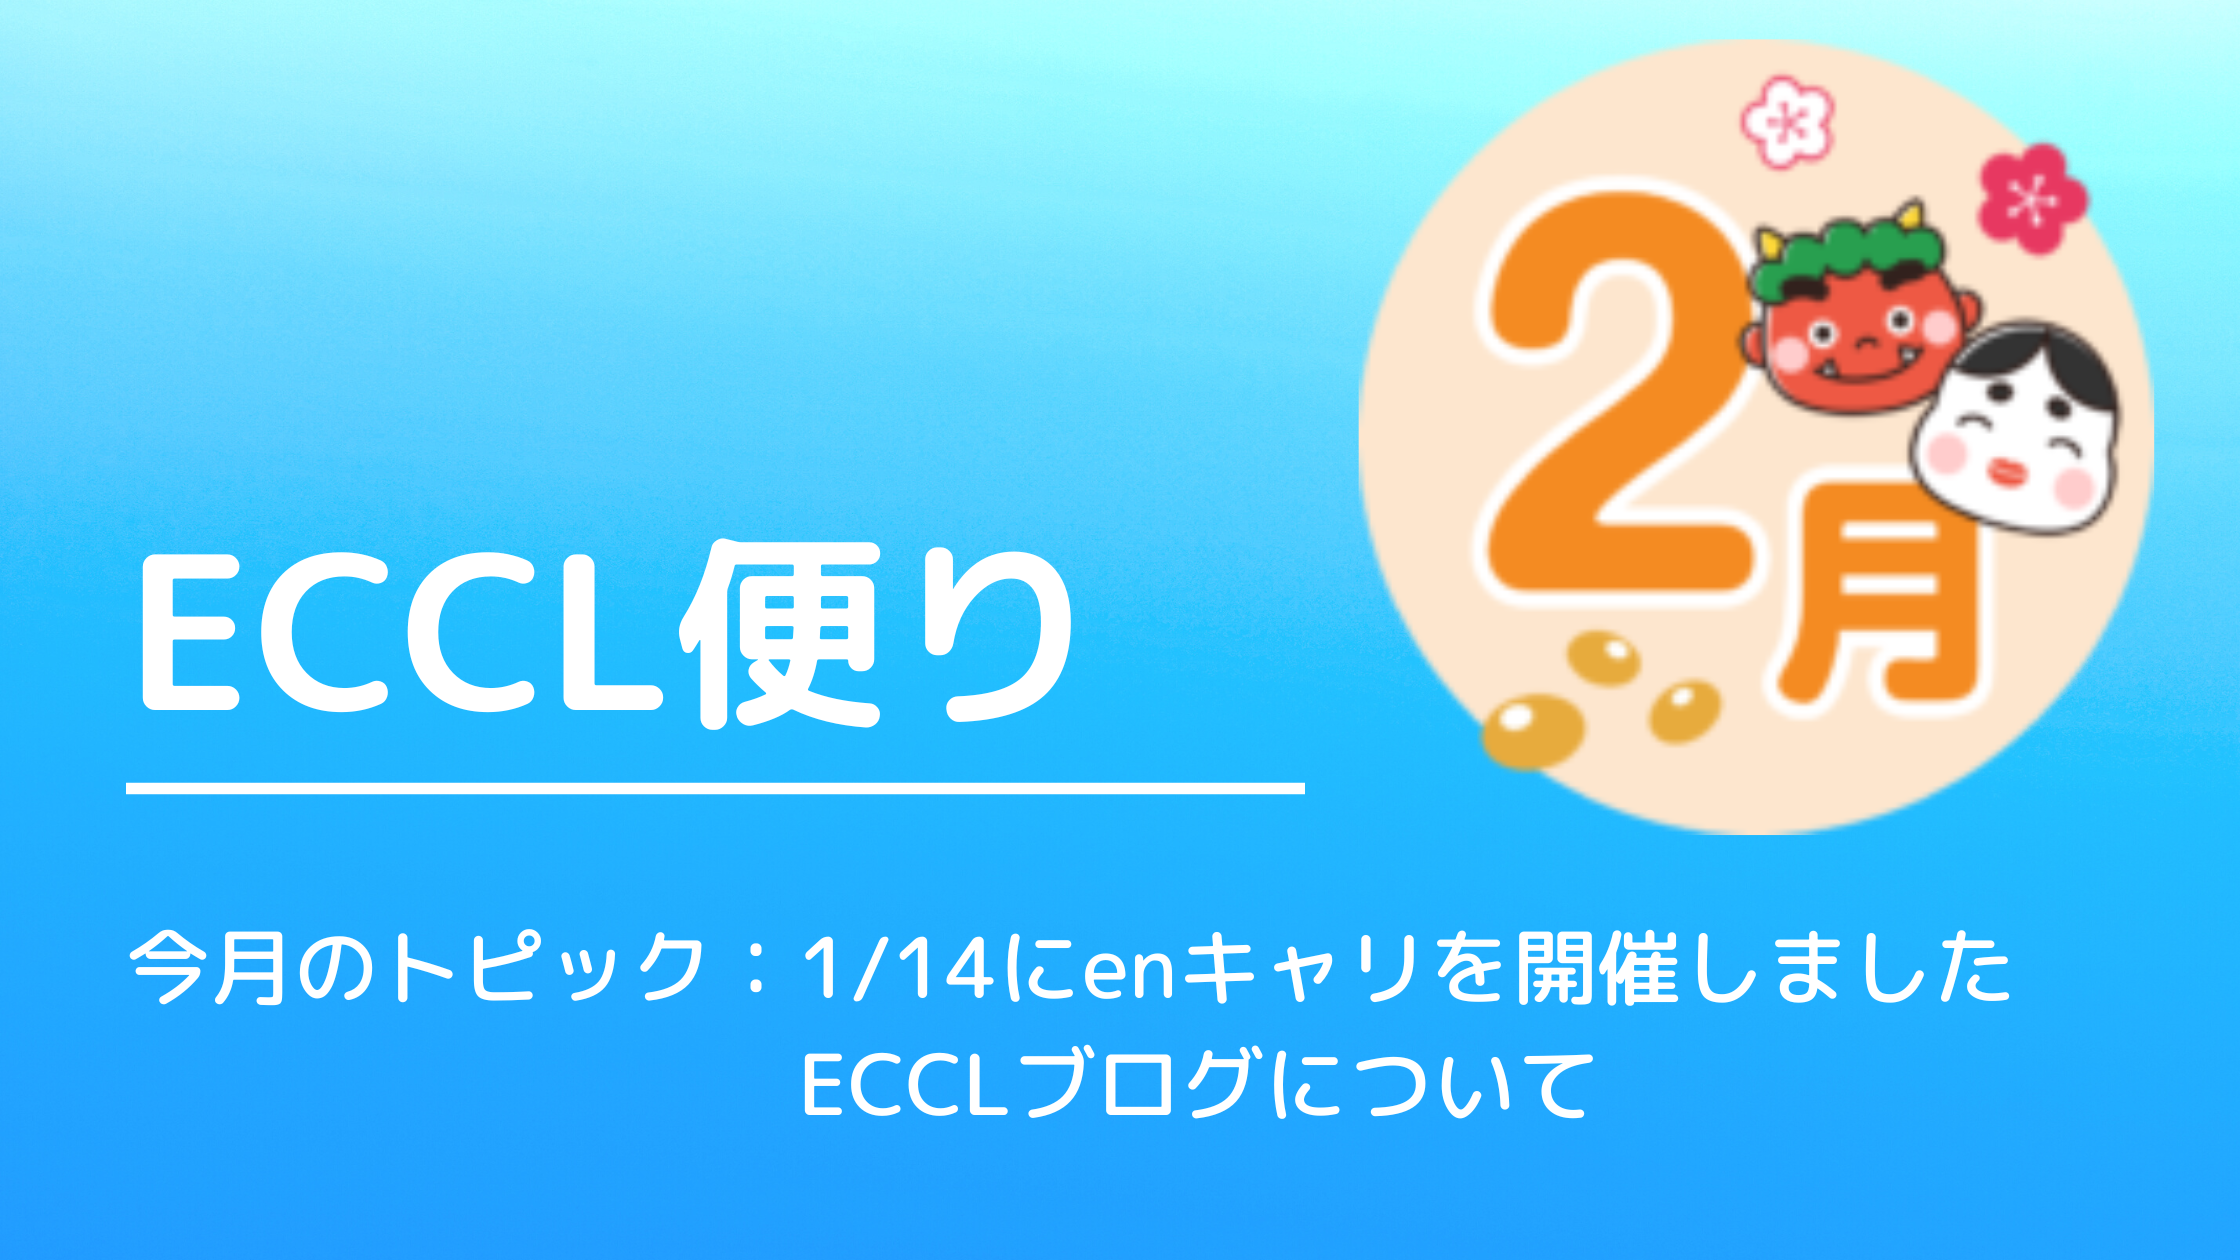 ECCL便り12月号♪